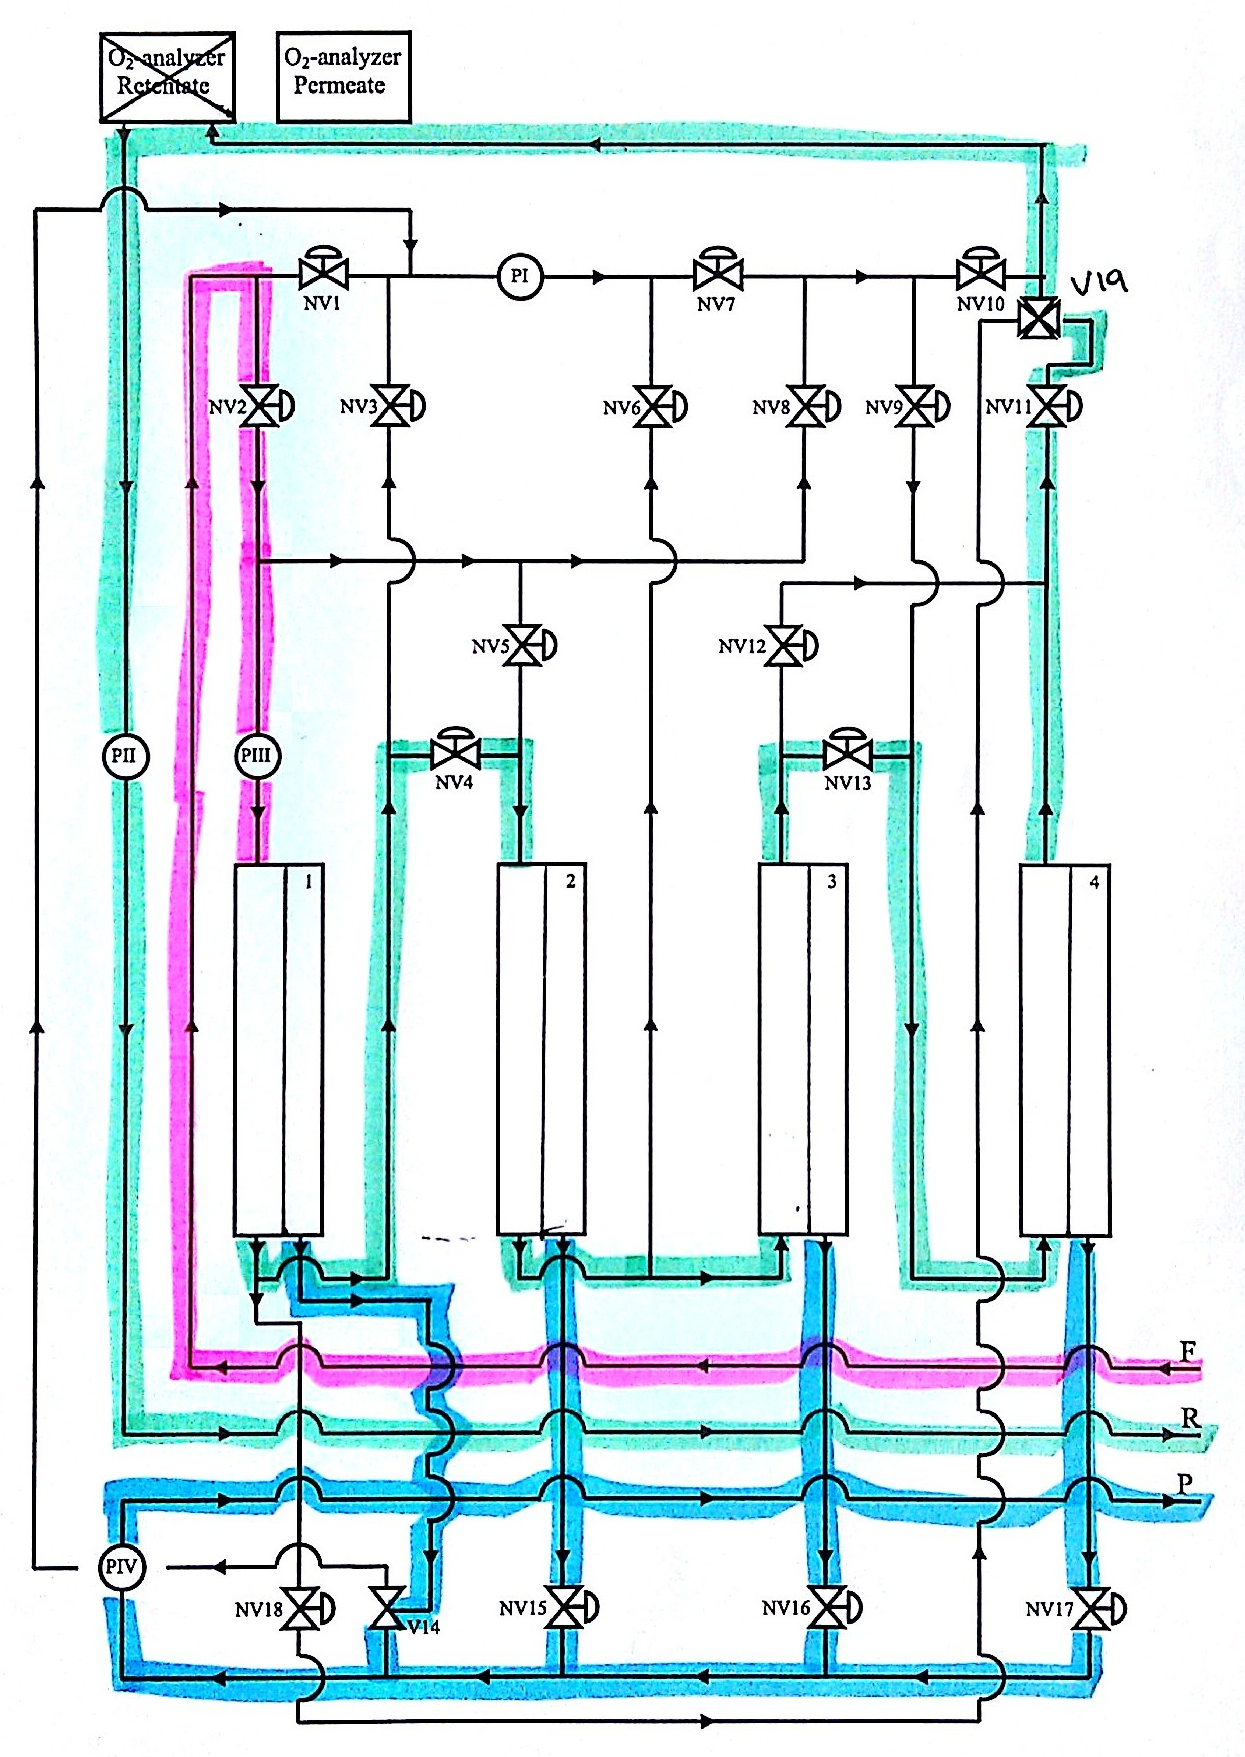 I Figur C.5 er flytskjema for konfigurasjon 5 vist. Figur C.5: Flytskjema for konfigurasjon 5, som består av fire moduler i serie.